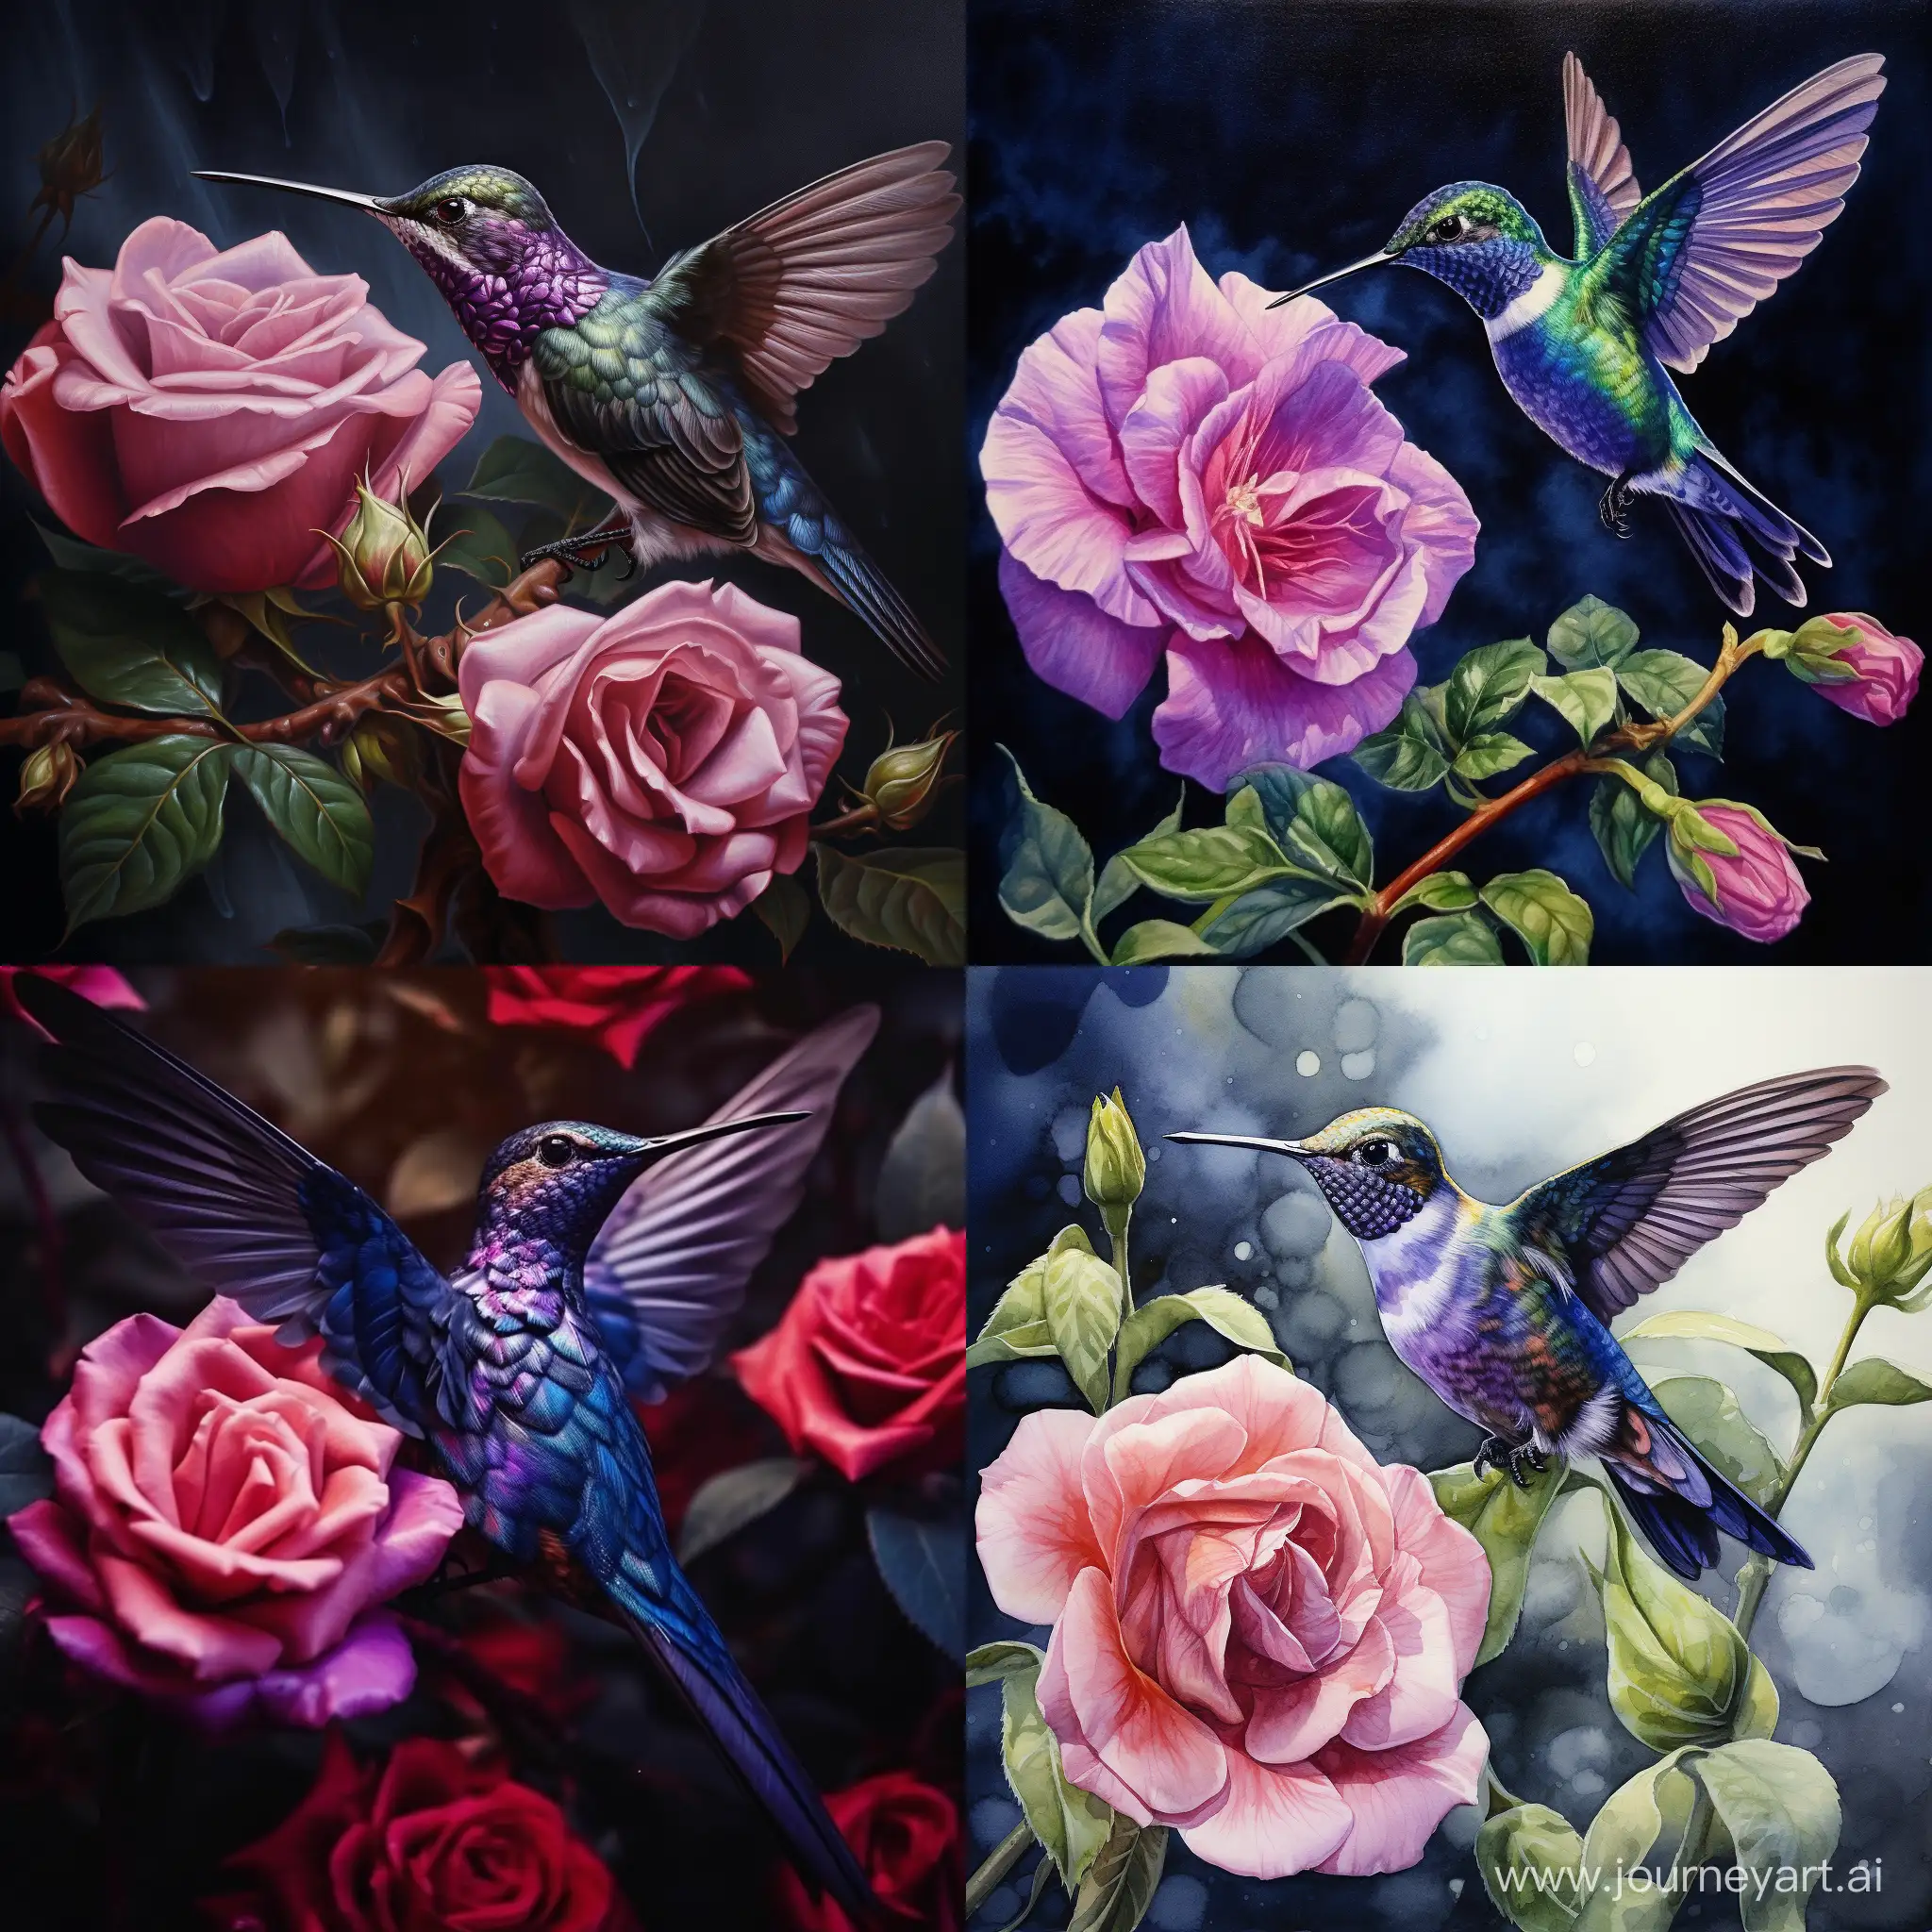 Graceful-Hummingbird-Feeding-on-a-Vibrant-Purple-Rose